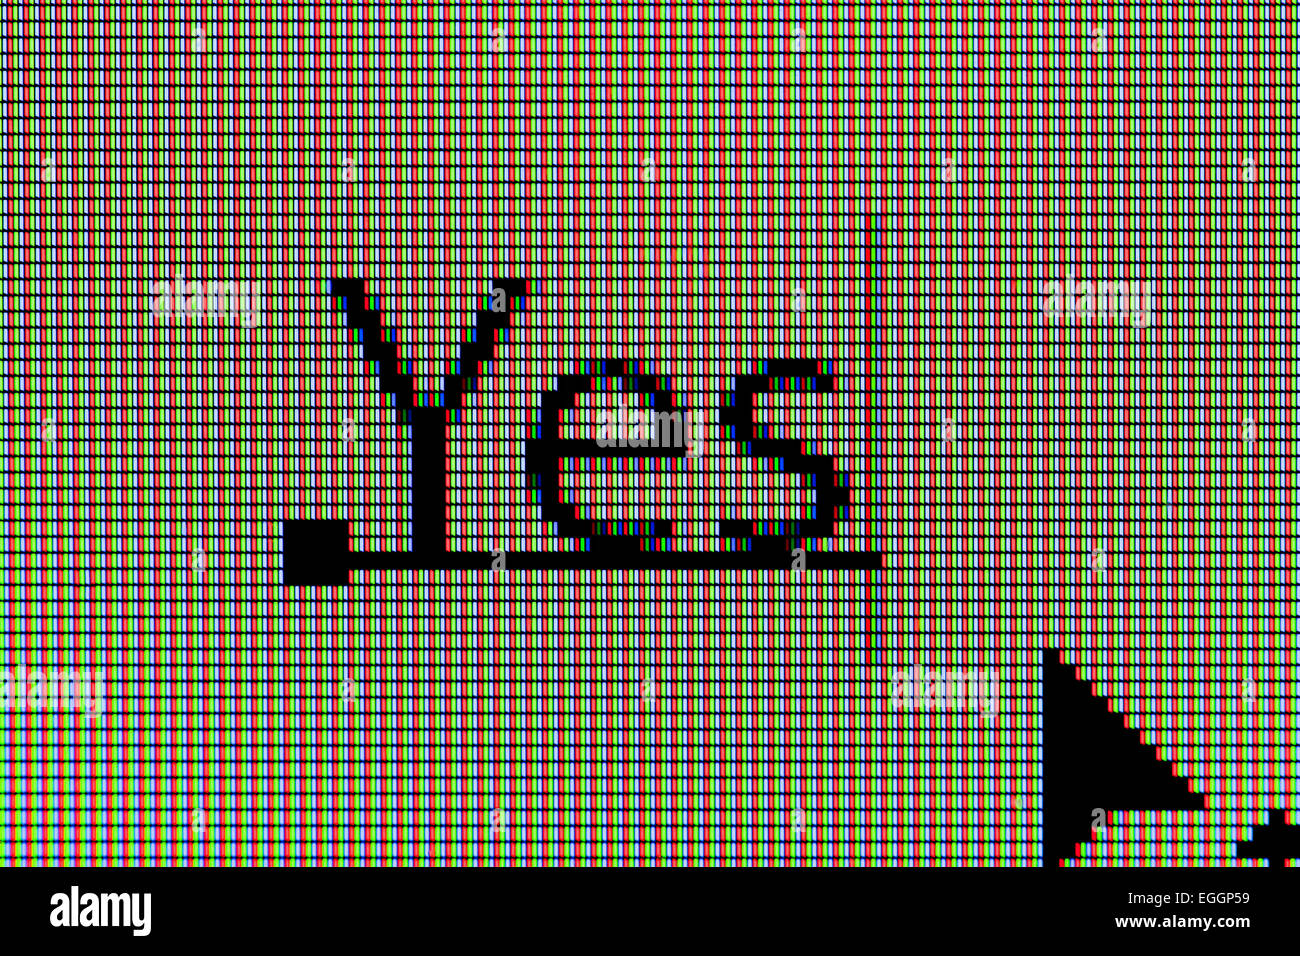 Primo piano della parola "Sì" sul display a cristalli liquidi dello schermo del computer Foto Stock